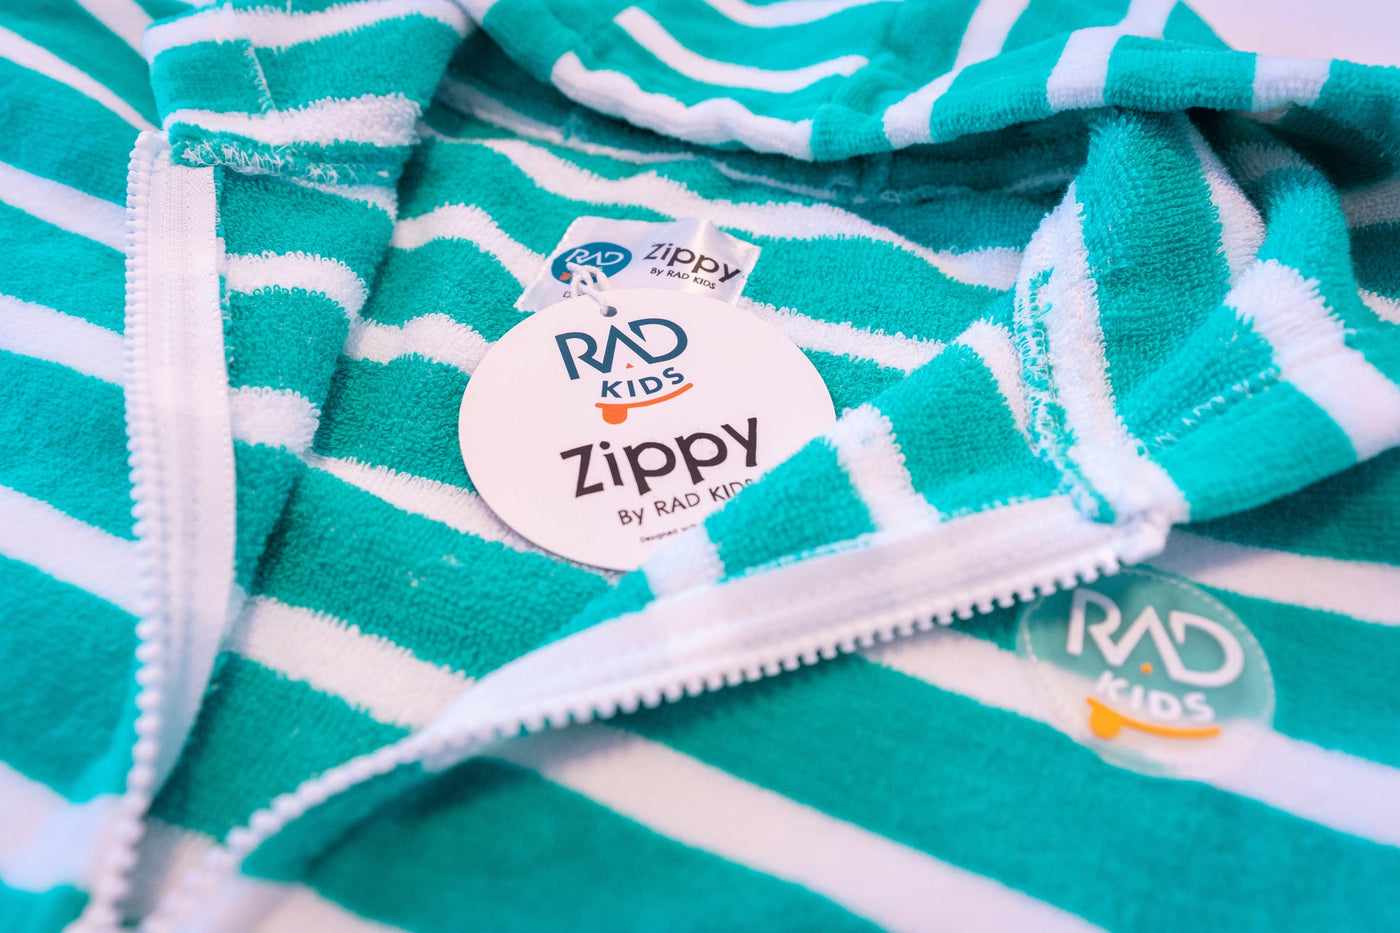 Kids Hooded Towels | Zippy Aqua Green Kids Hooded Towels | Zippy by Rad Kids | Kids Poncho Towel |